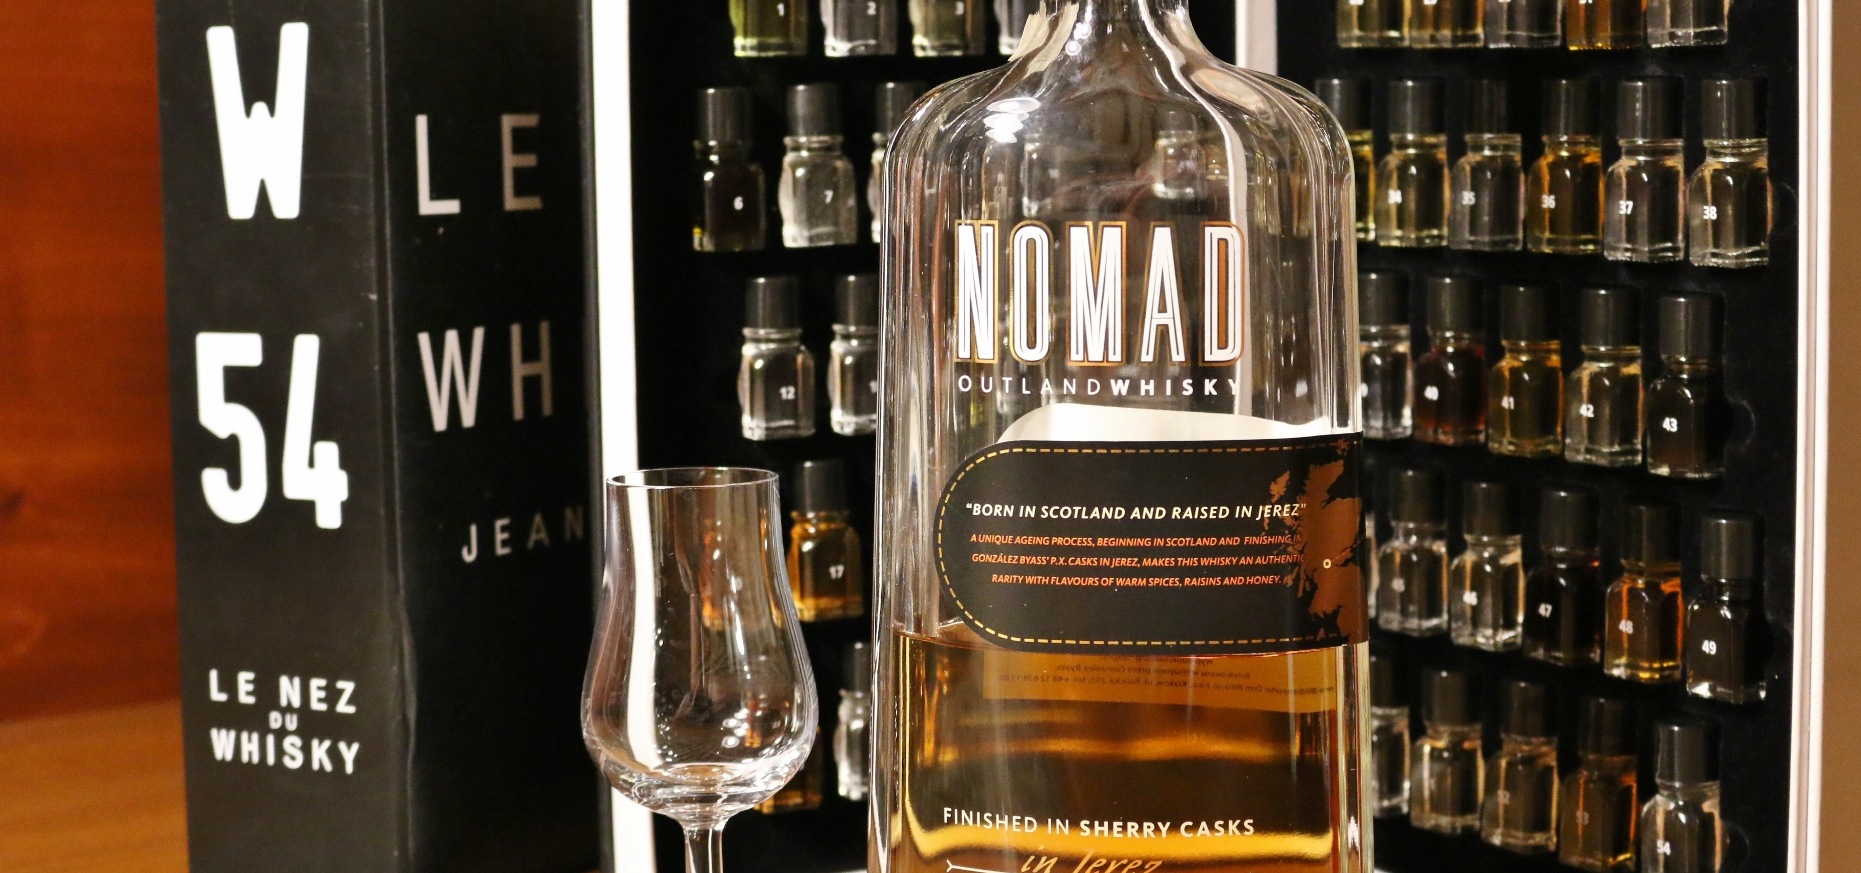 Nomad whisky